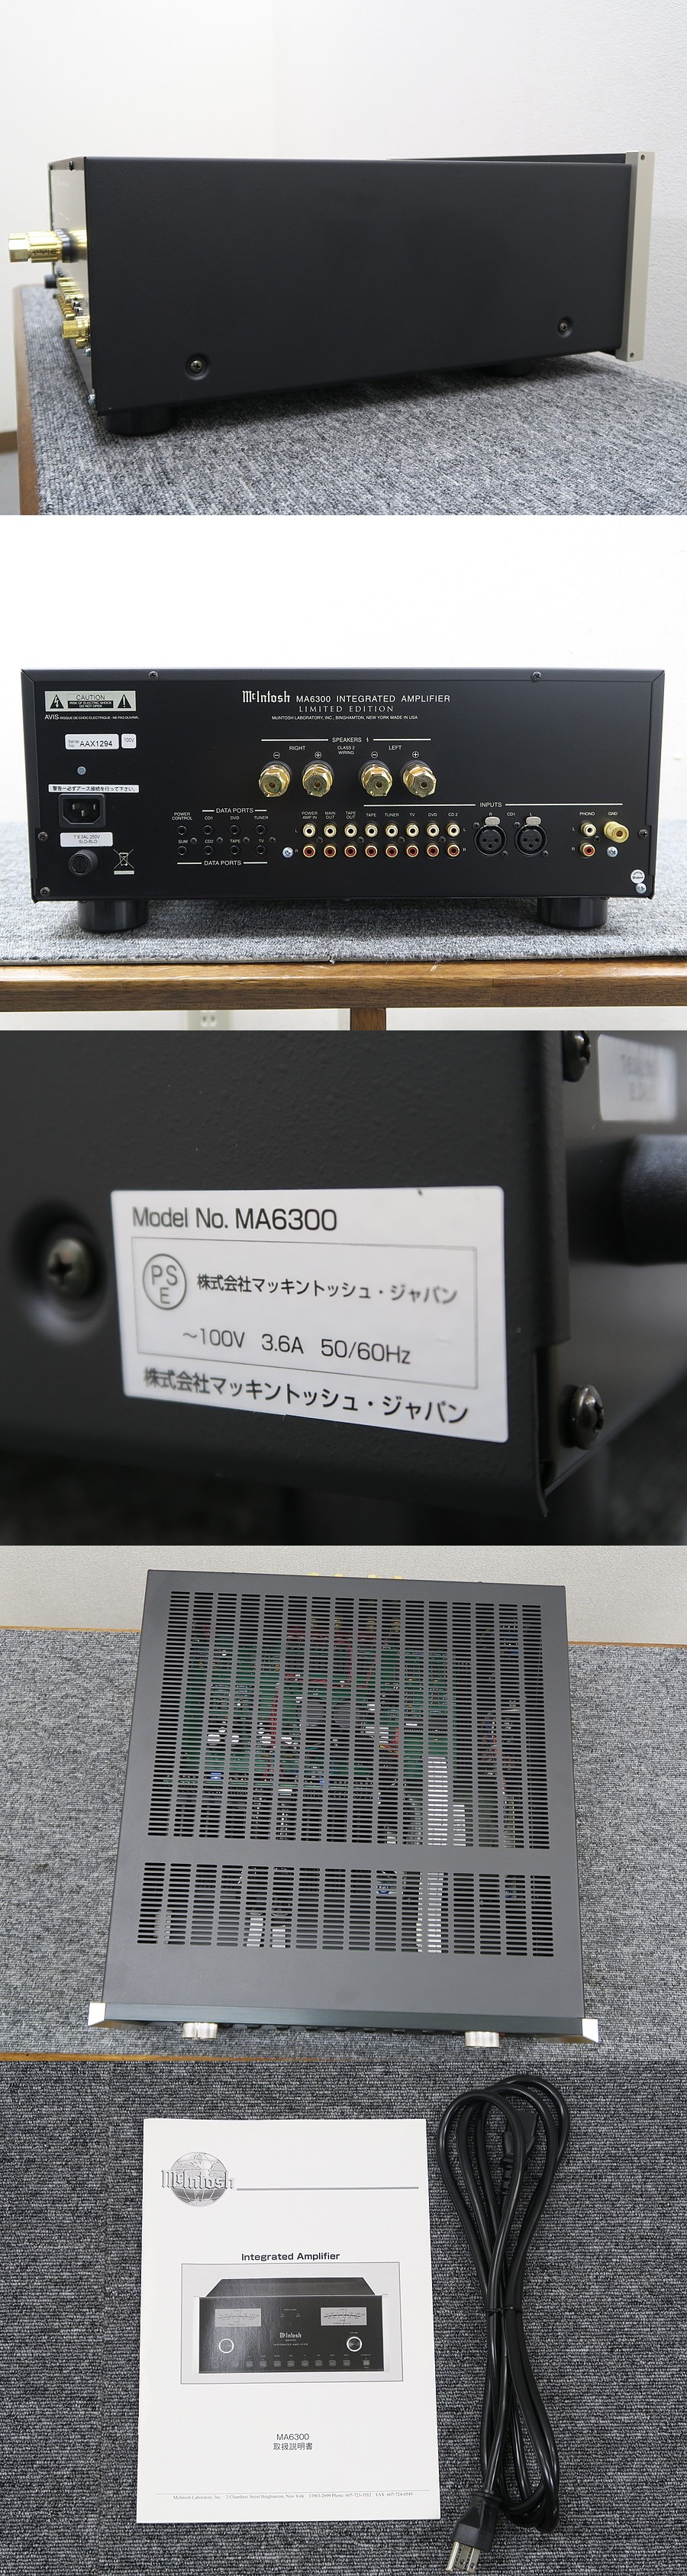 Mcintosh MA6300 LIMITED EDITION プリメインアンプ 正規輸入100V 元箱